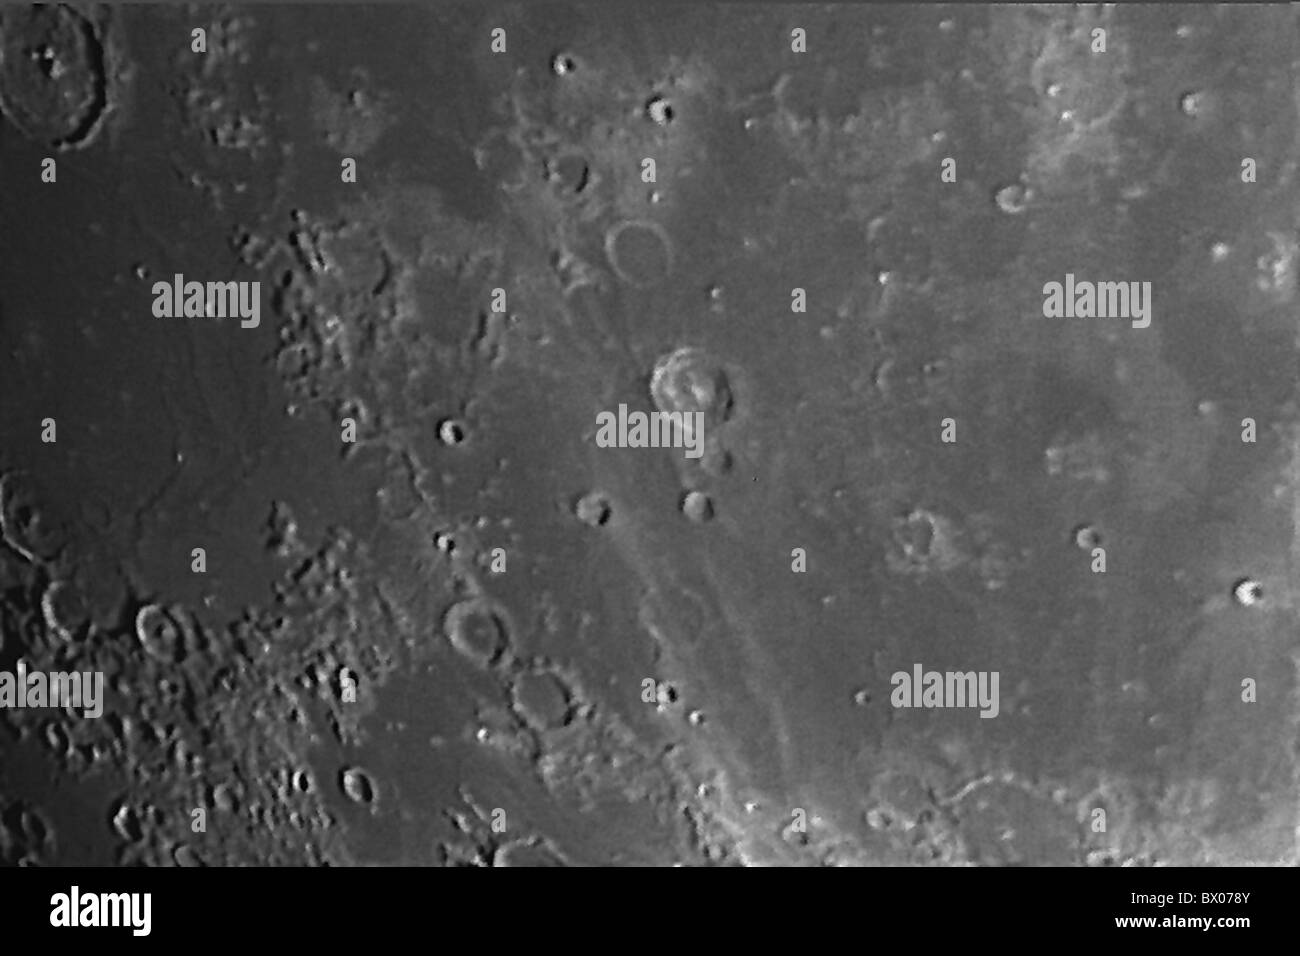 Coupe d'astronomie partie close up detail Mare Nubium cratère lunaire lune noir et blanc surface surface Banque D'Images